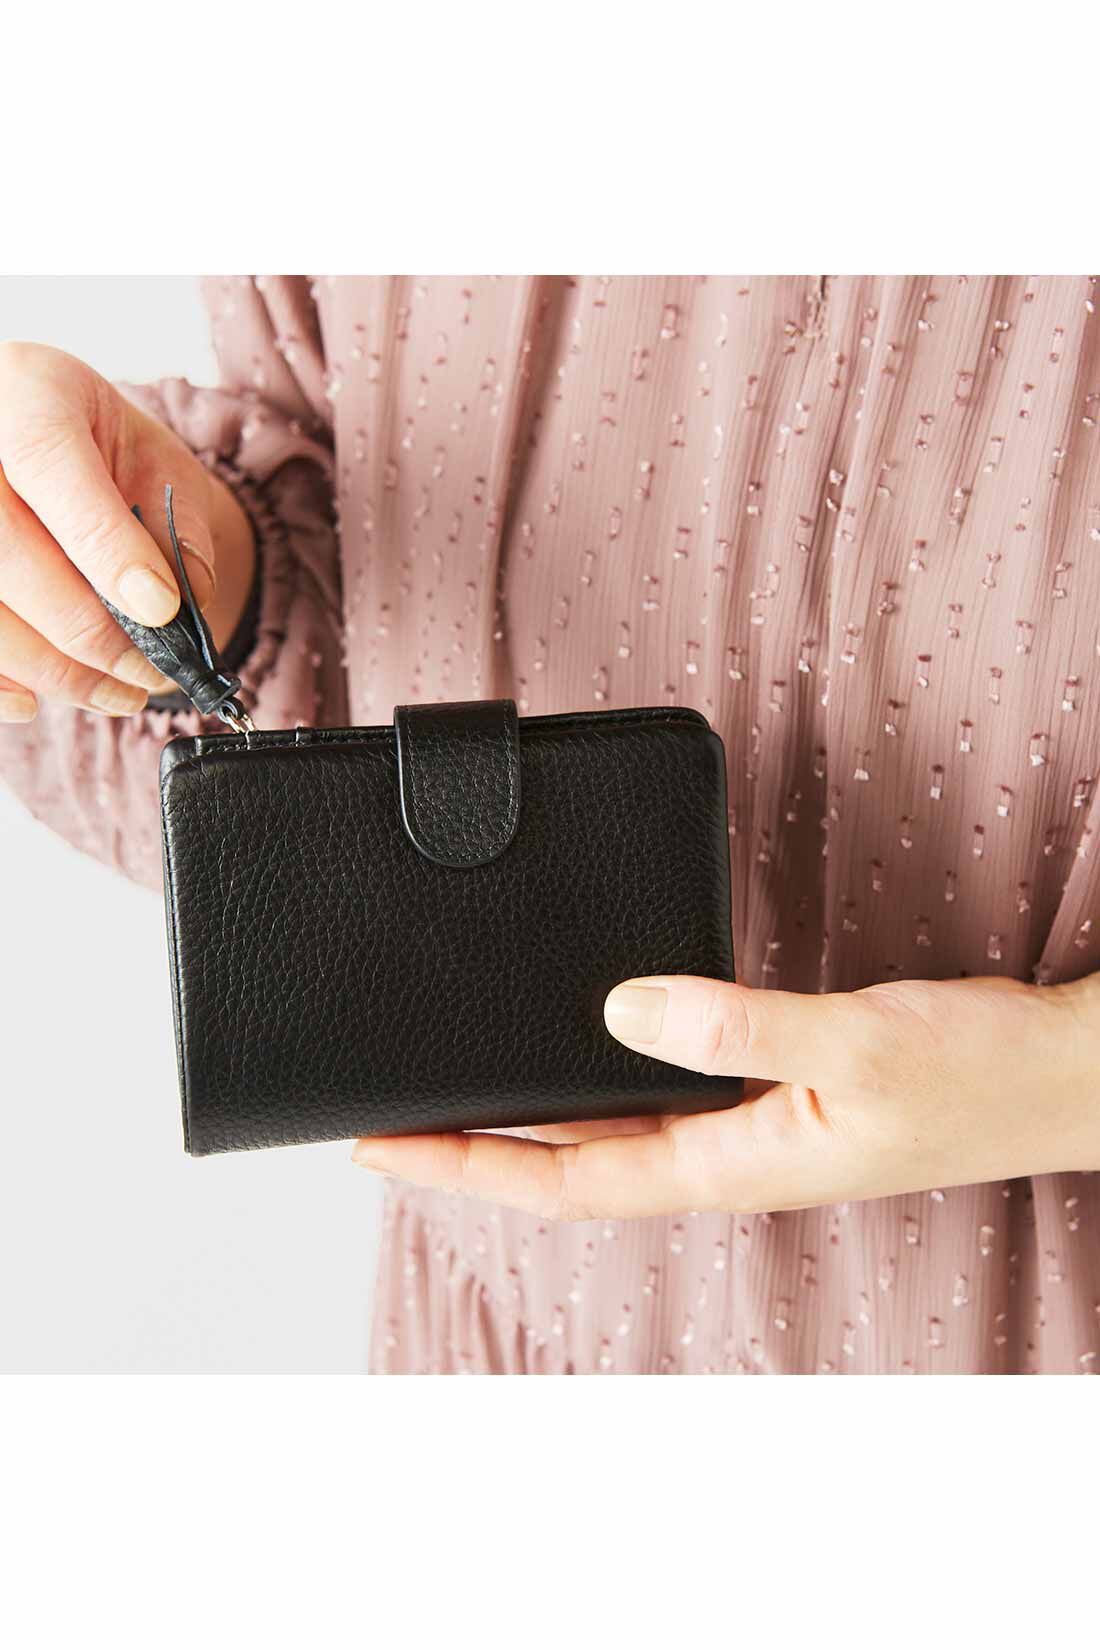 IEDIT|IEDIT[イディット]　くったり本革素材できれいめ二つ折り財布〈オレンジ〉|手のひらに収まるコンパクトなサイズ感。